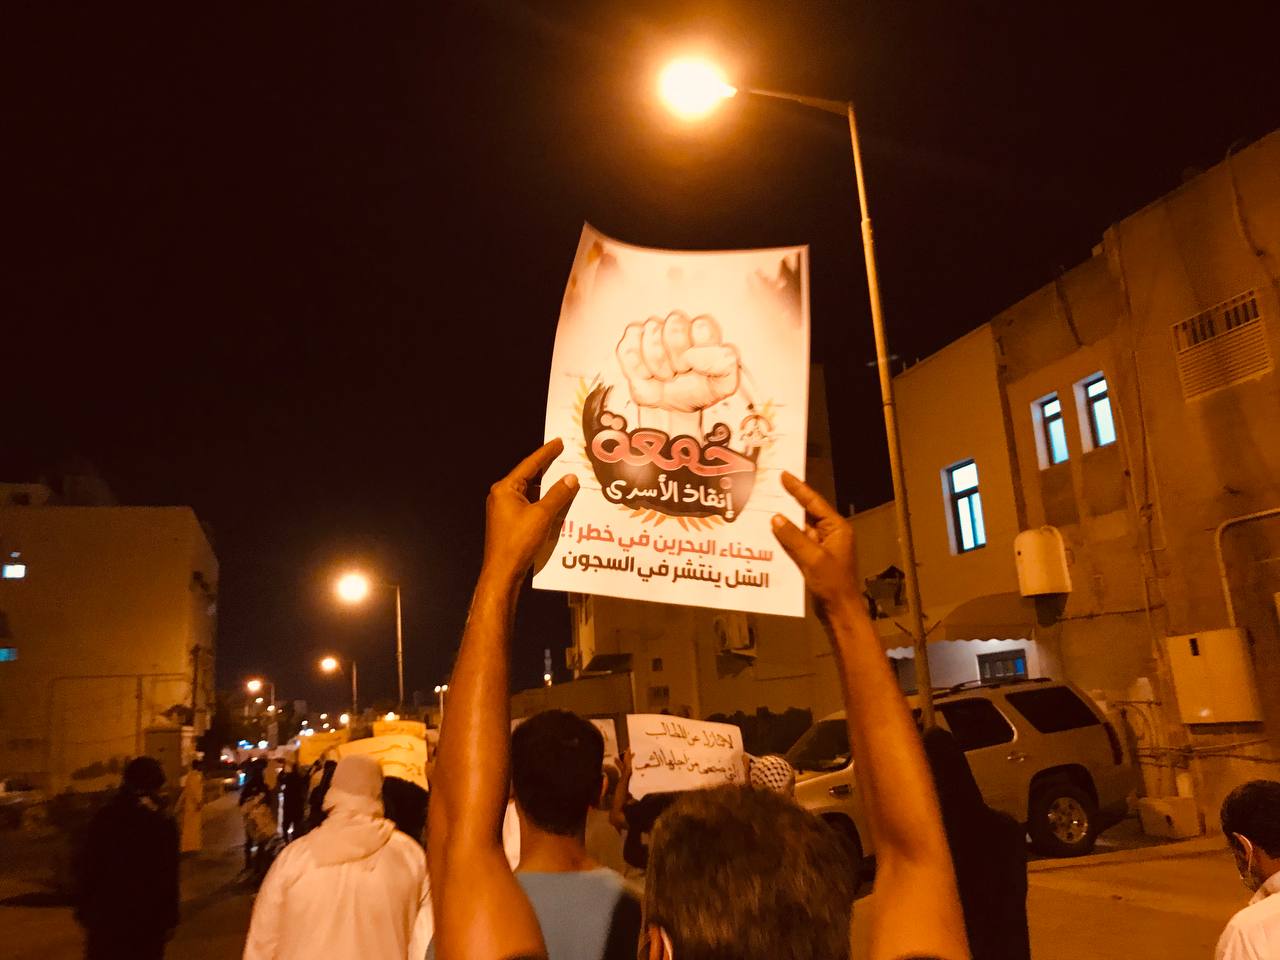 سجناء رأي في البحرين يهددون بإضراب مفتوح ضد الانتهاكات بحقهم